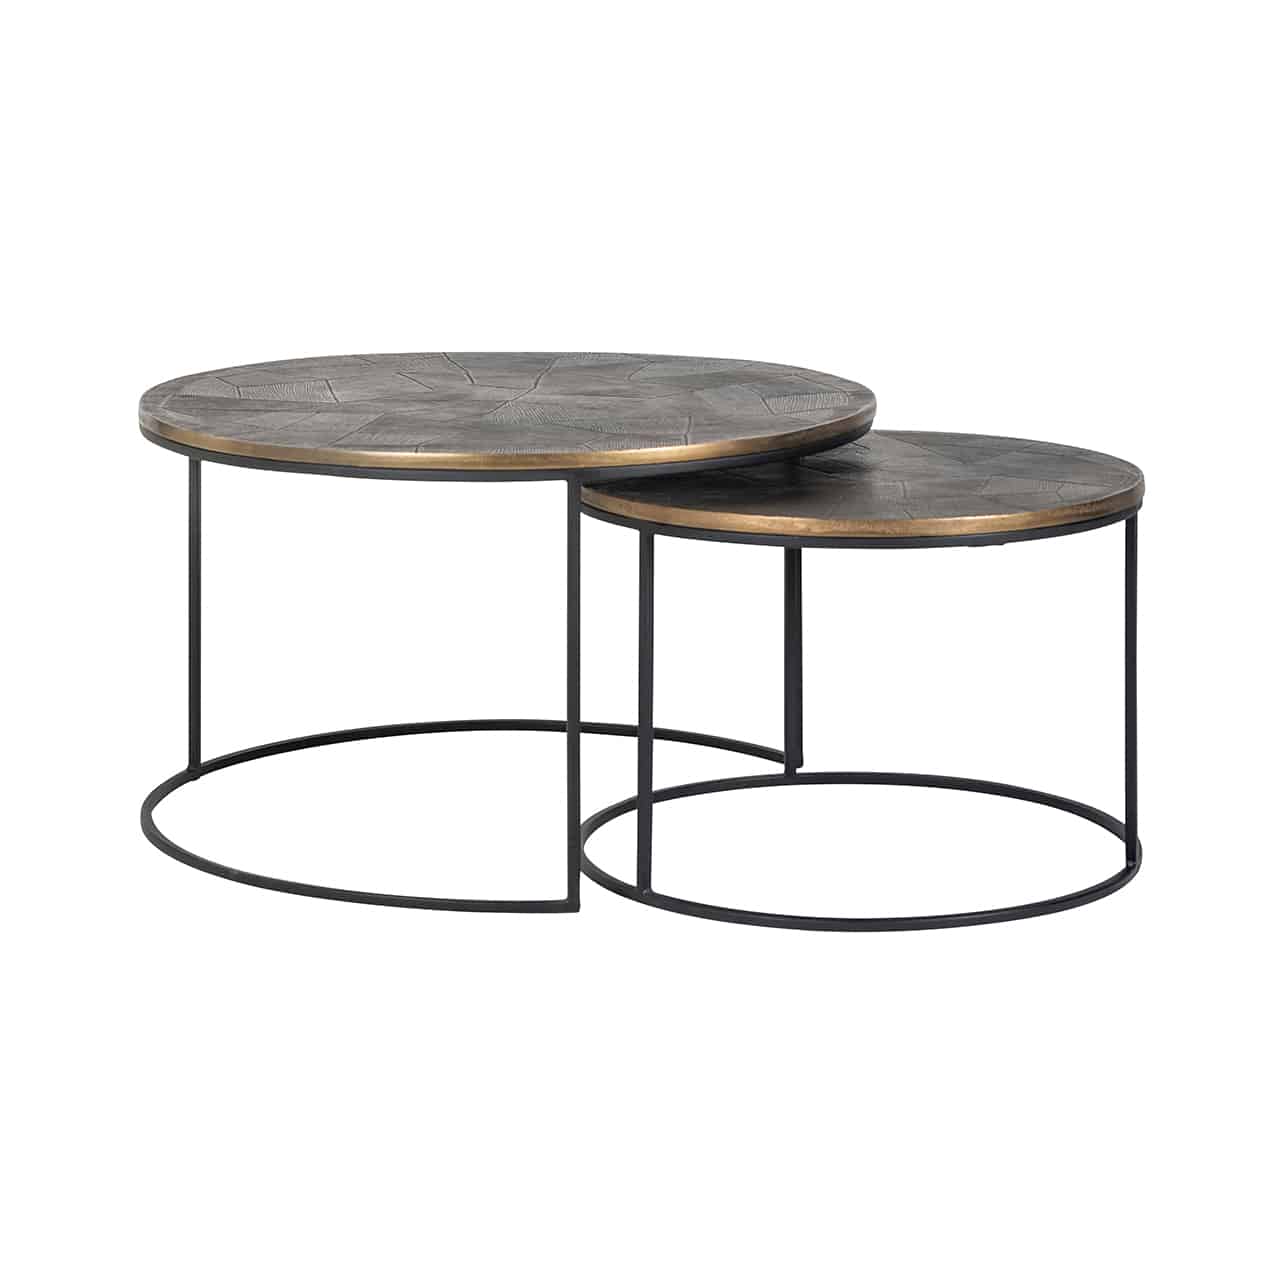 Couchtisch 2er Set; zwei verschieden hohe runde Tische, die zum Teil ineinandergeschoben sind; das Gestell ist aus schwarzem Metall, die golden, matt glänzende Tischplatte, aus gebürstetem Aluminium.